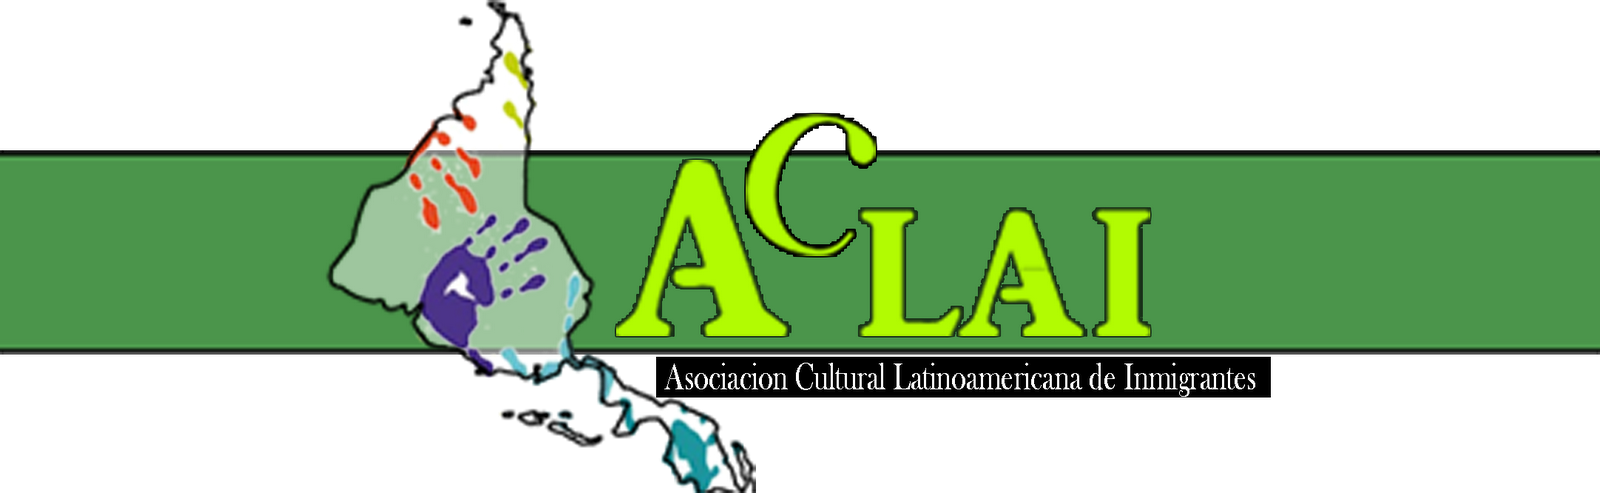 ACLAI - Asociación Cultural Latinoamericana de Inmigrantes EH